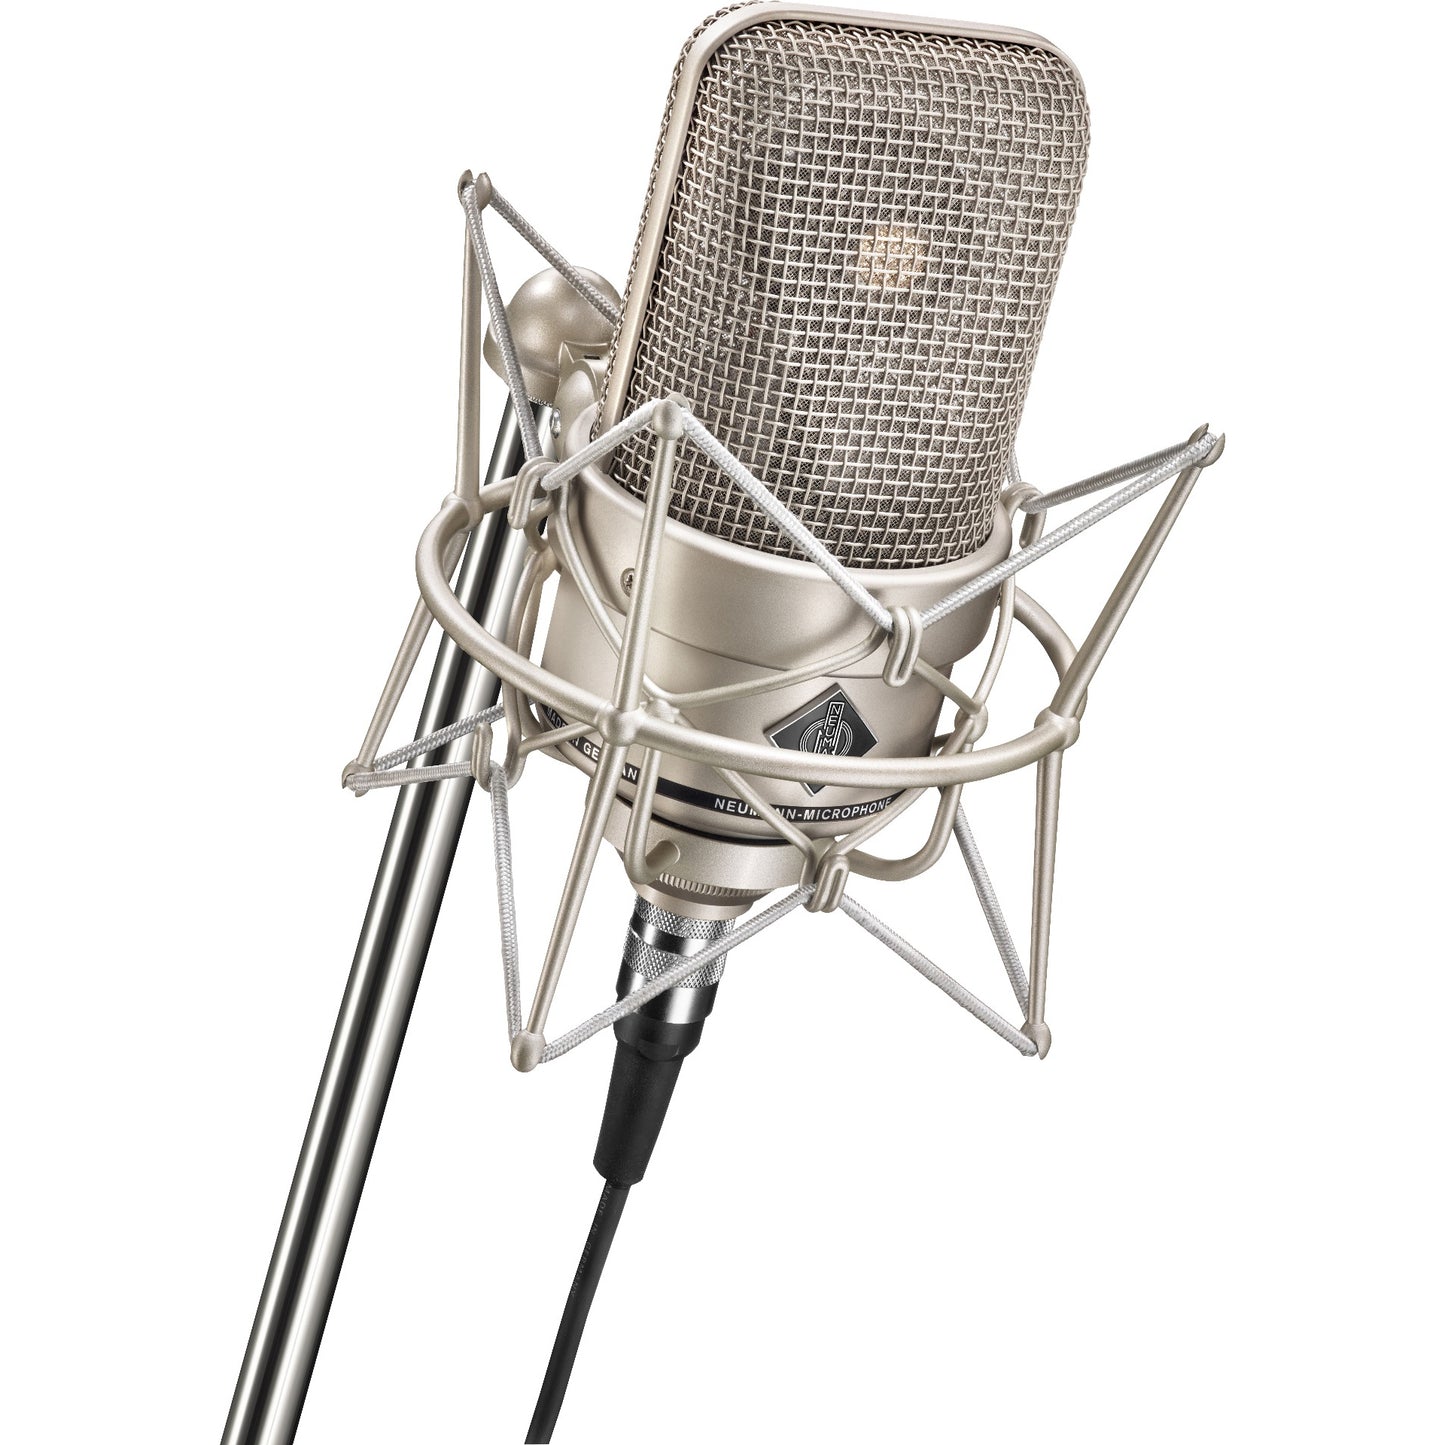 Neumann M 150 Tube Microphone